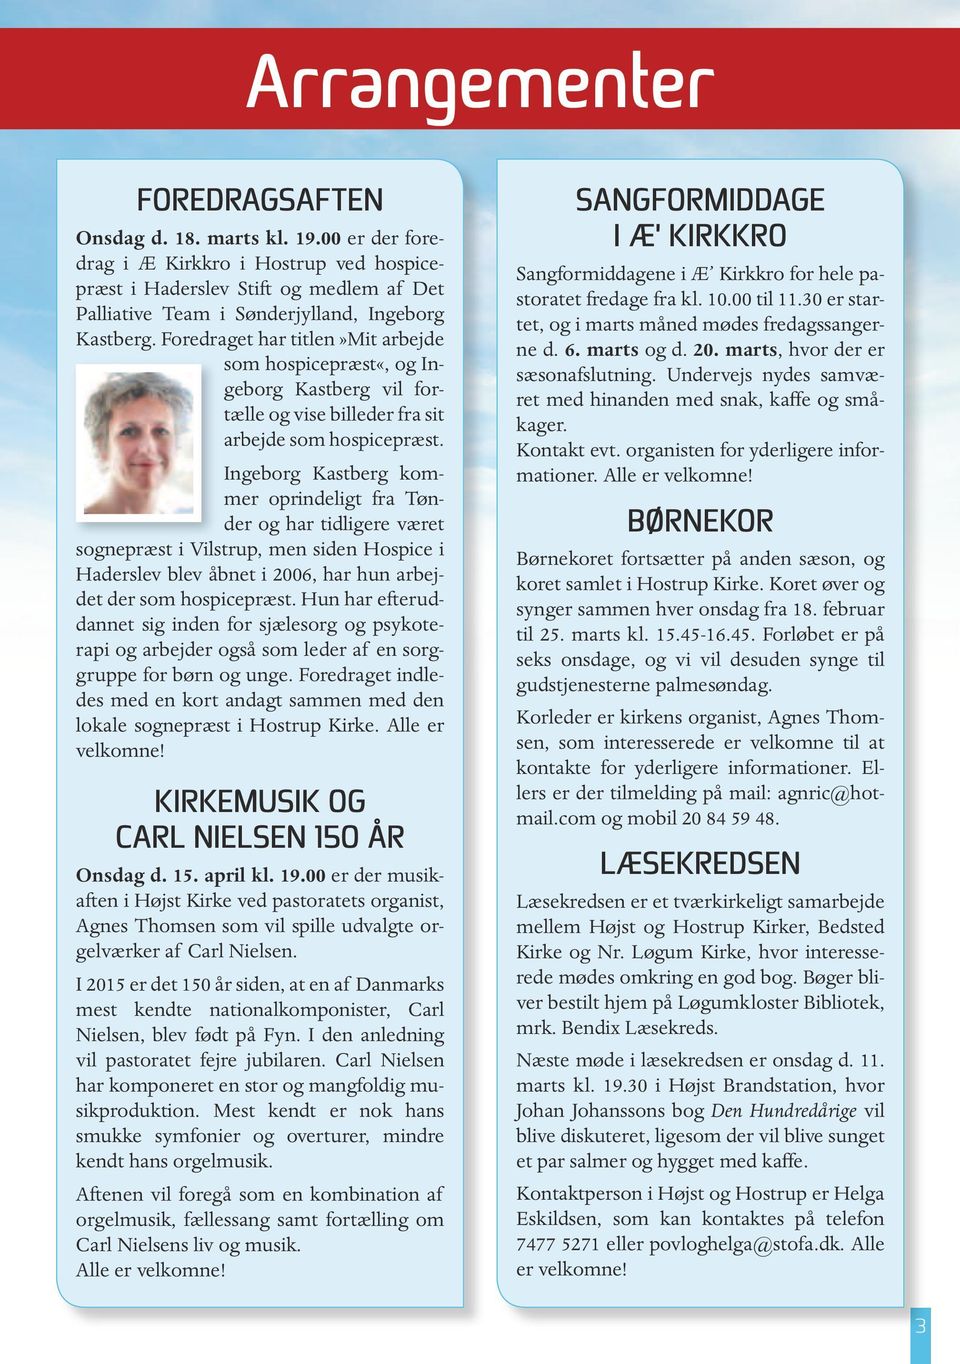 Ingeborg Kastberg kommer oprindeligt fra Tønder og har tidligere været sognepræst i Vilstrup, men siden Hospice i Haderslev blev åbnet i 2006, har hun arbejdet der som hospicepræst.